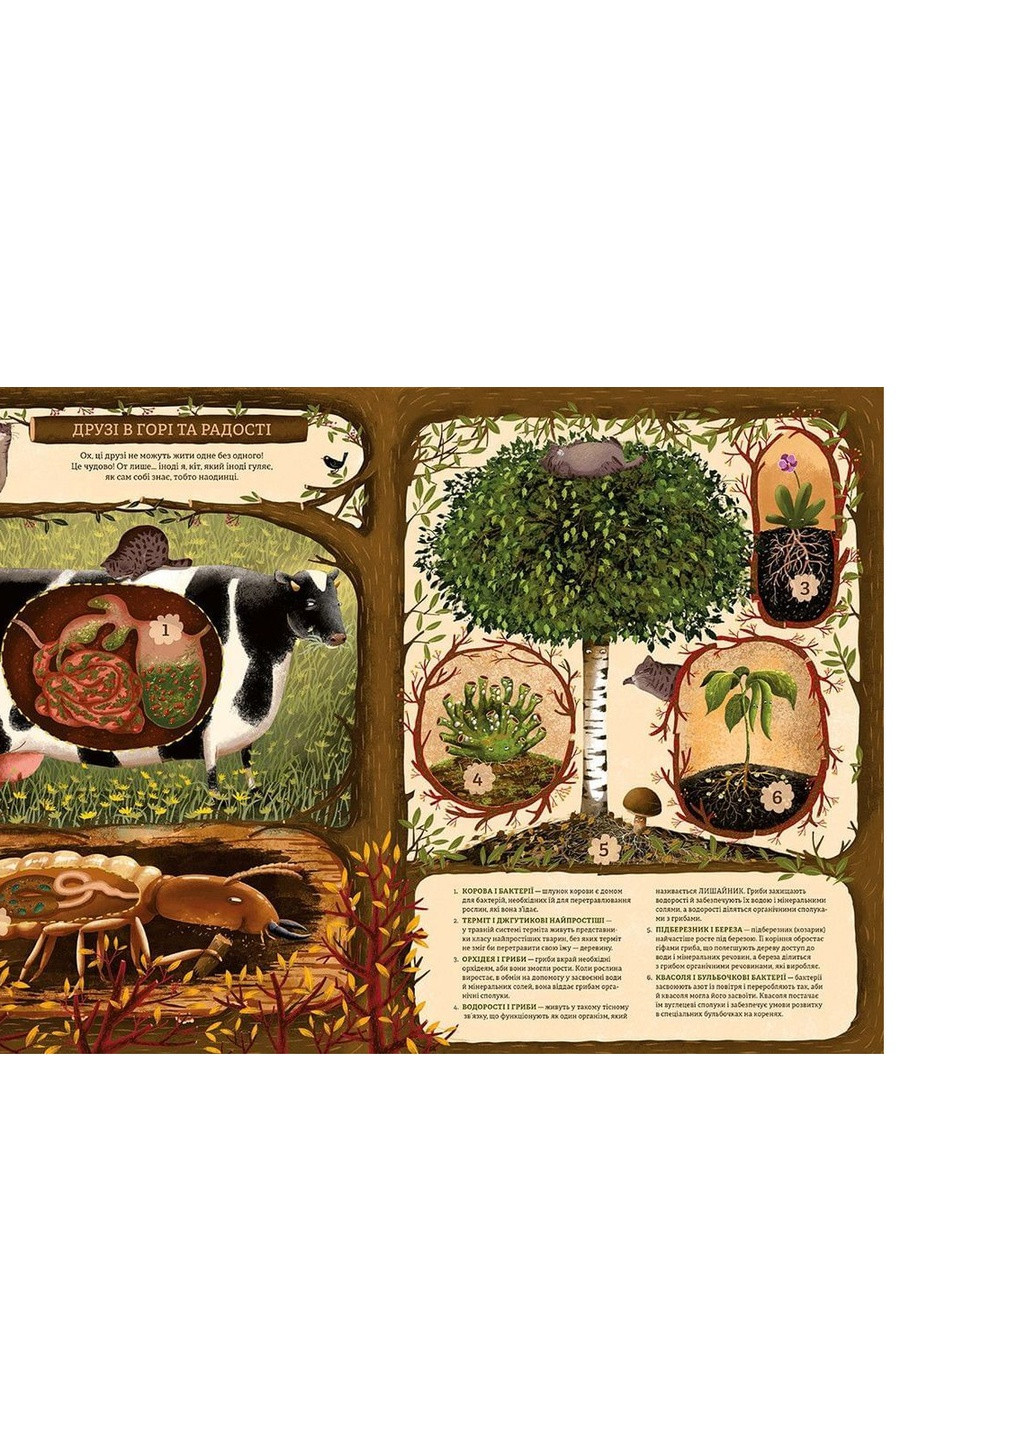 Книга Незвичайна дружба у світі рослин і тварин - Емілія Дзюбак (9786176798668) Видавництво Старого Лева (258357371)